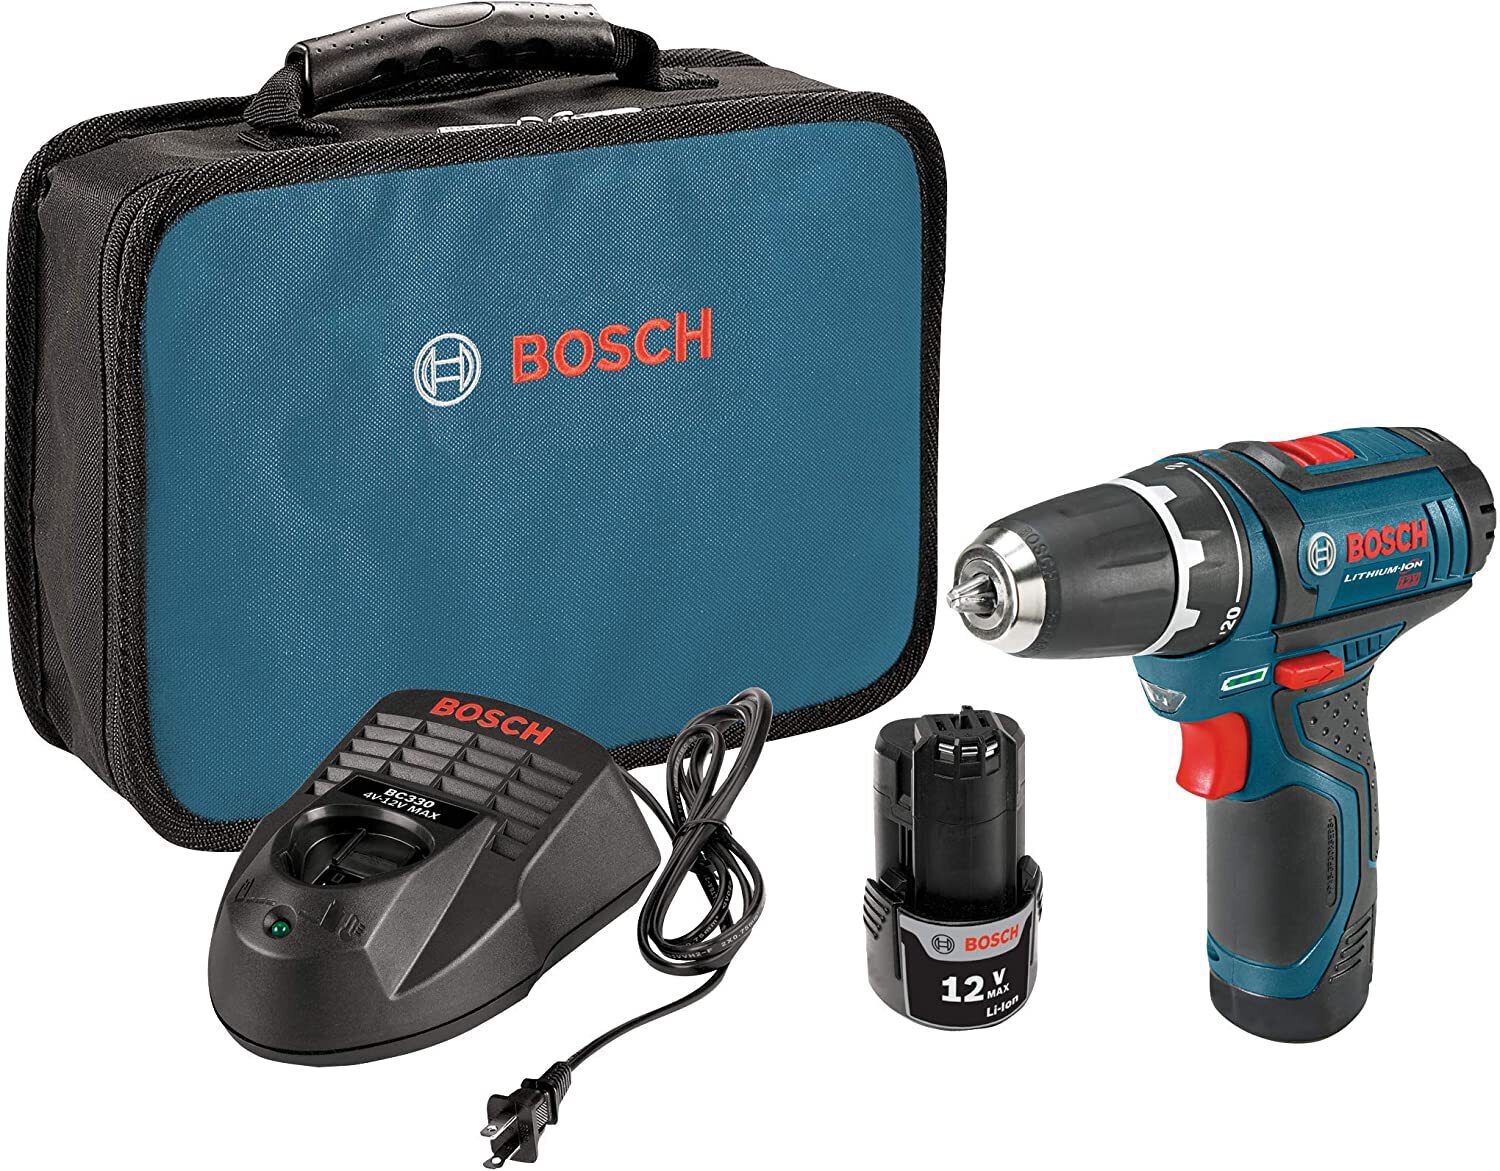 Bosch 12V Drill/Driver Kit